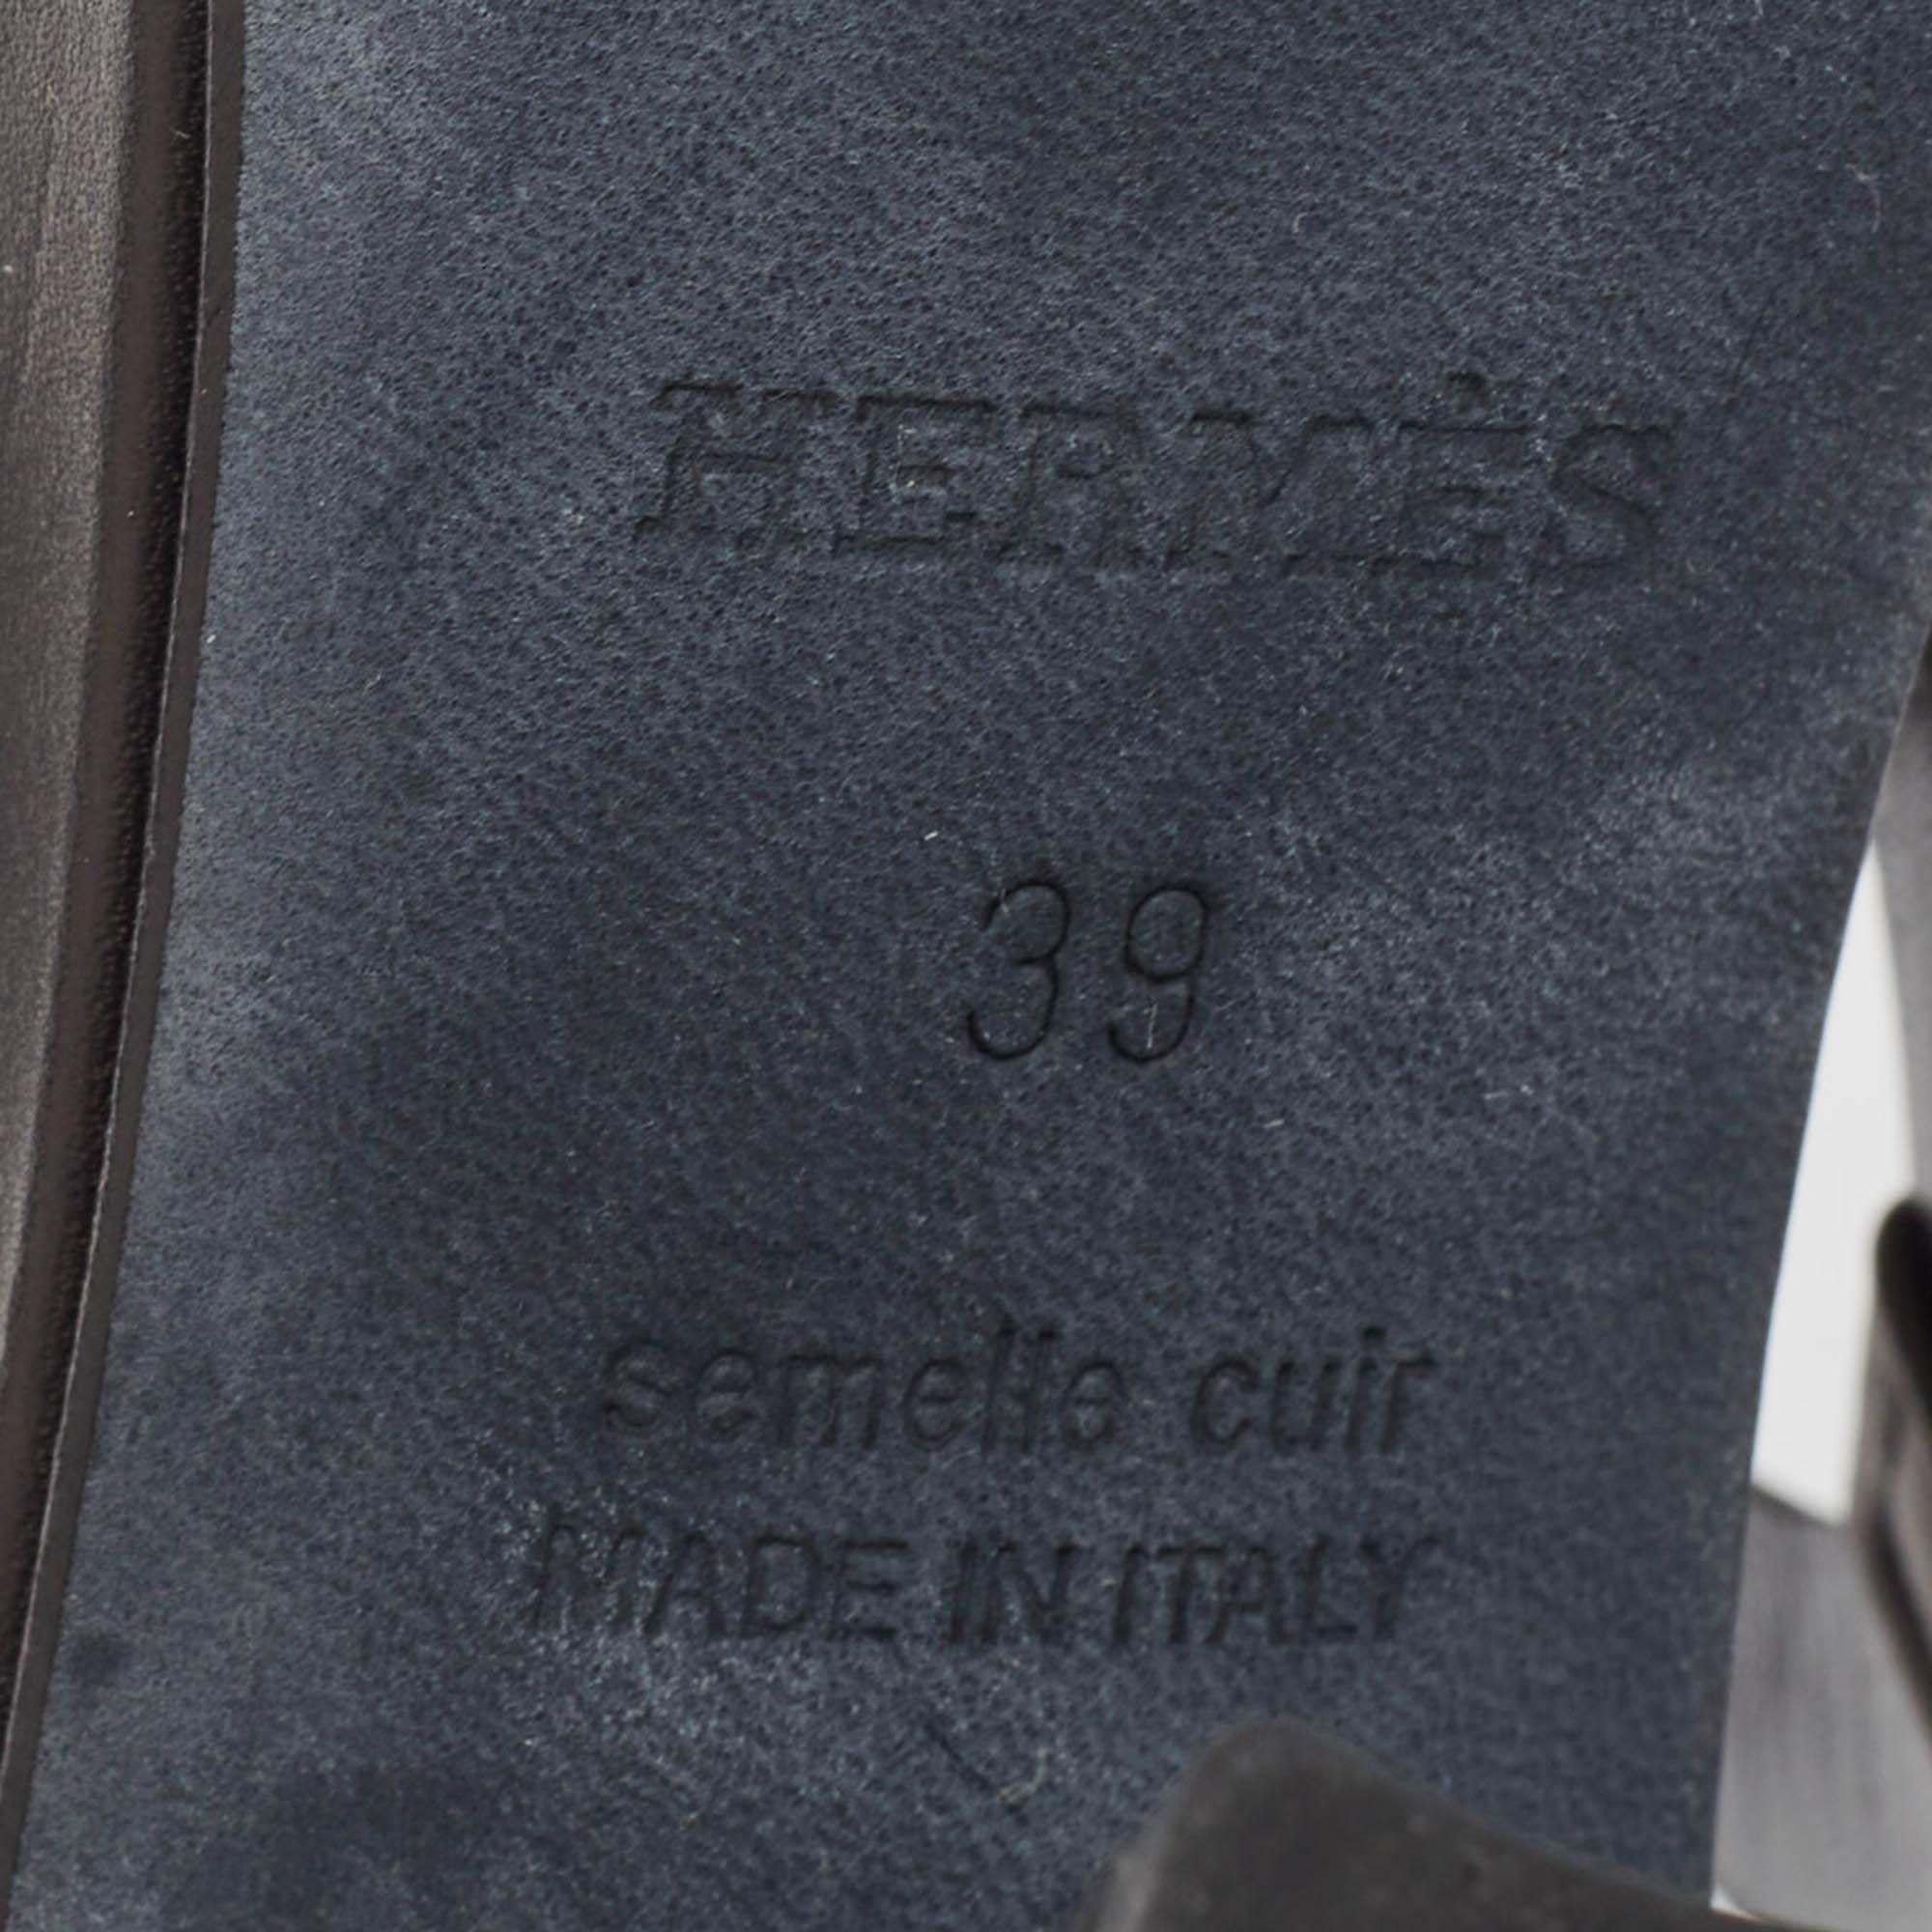 Hermes Black Leather Block Heel Ankle Strap Sandals Size 39 5